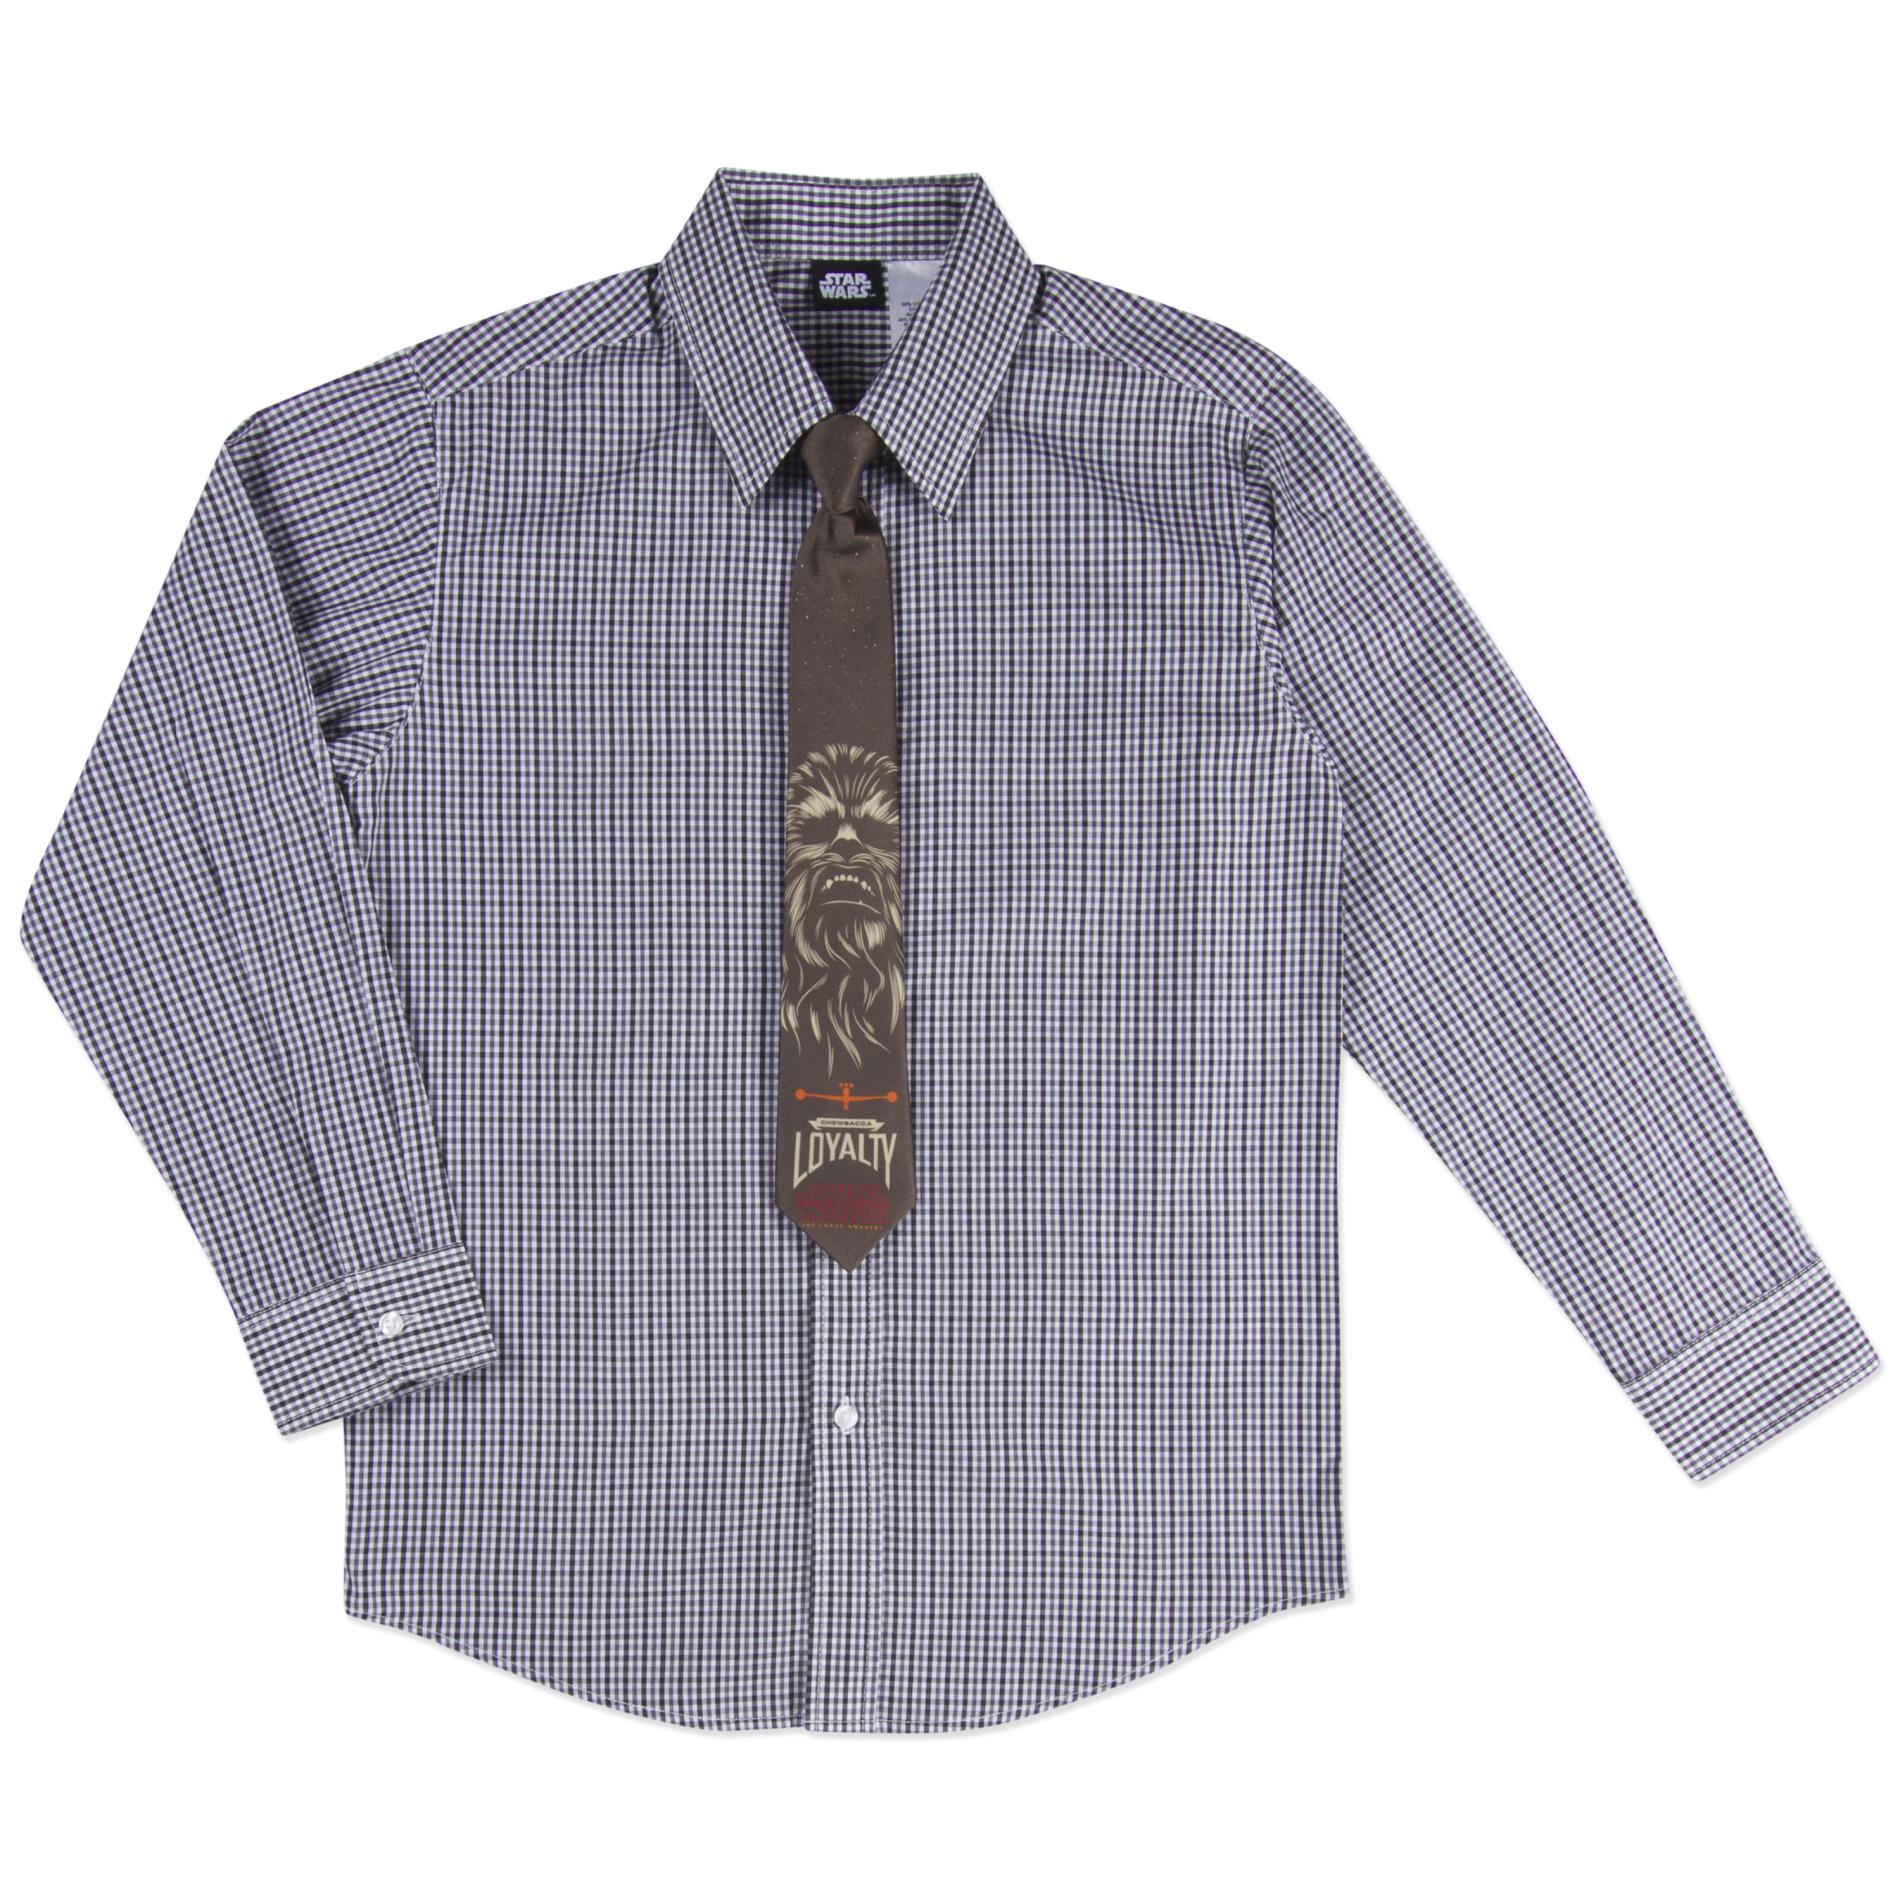 Chewbacca Boy's Dress Shirt & Necktie - Plaid